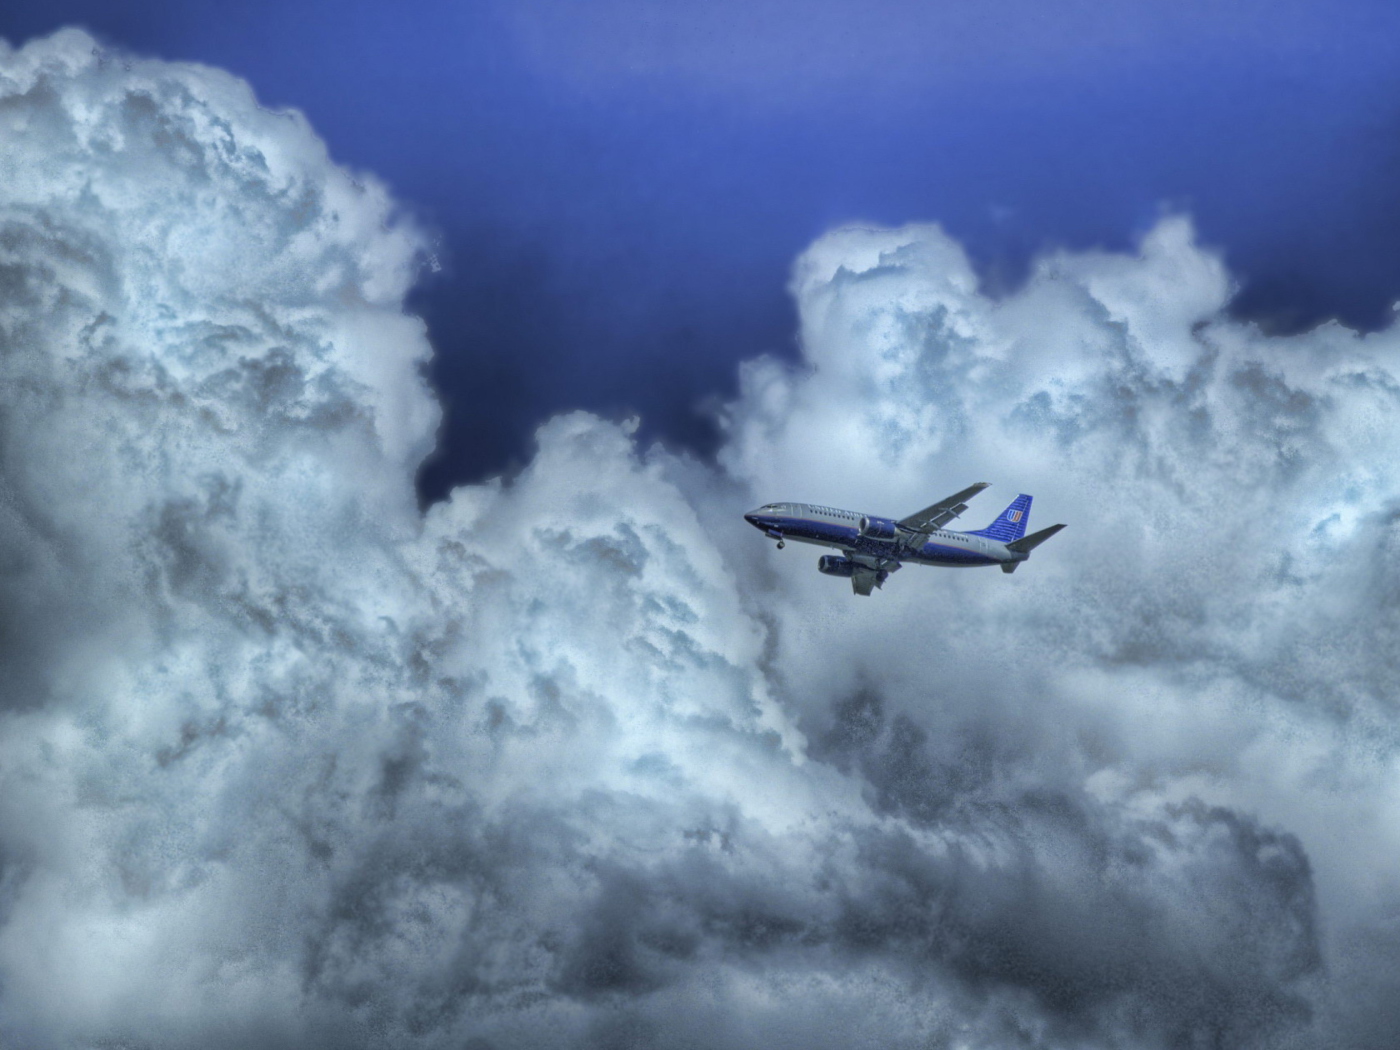 Обои Airplane In Clouds 1400x1050